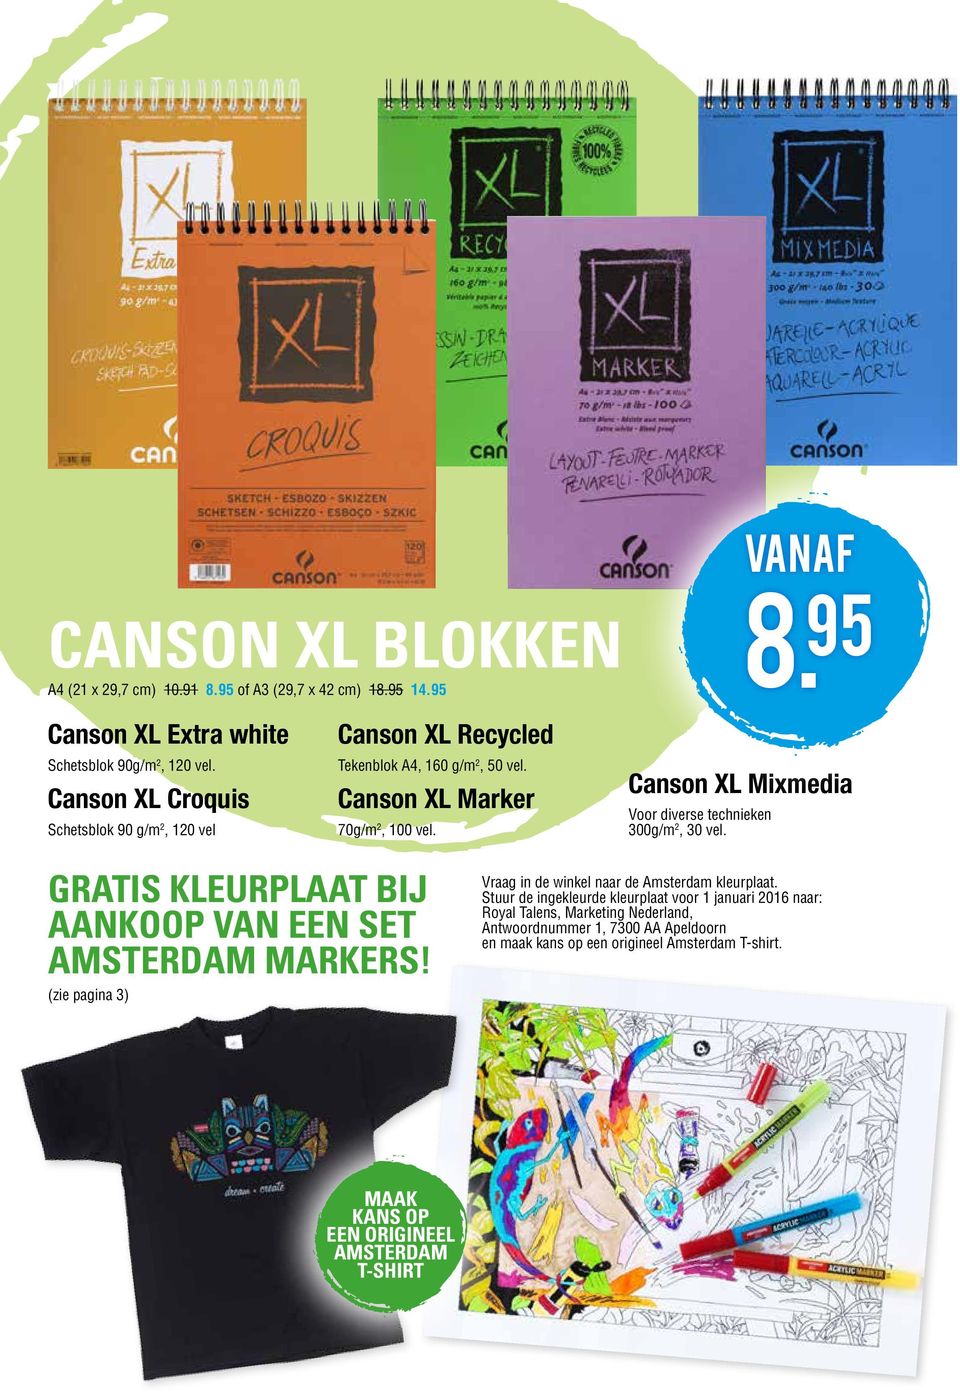 Canson XL Mixmedia Voor diverse technieken 300g/m 2, 30 vel. GRATIS KLEURPLAAT BIJ AANKOOP VAN EEN SET AMSTERDAM MARKERS!